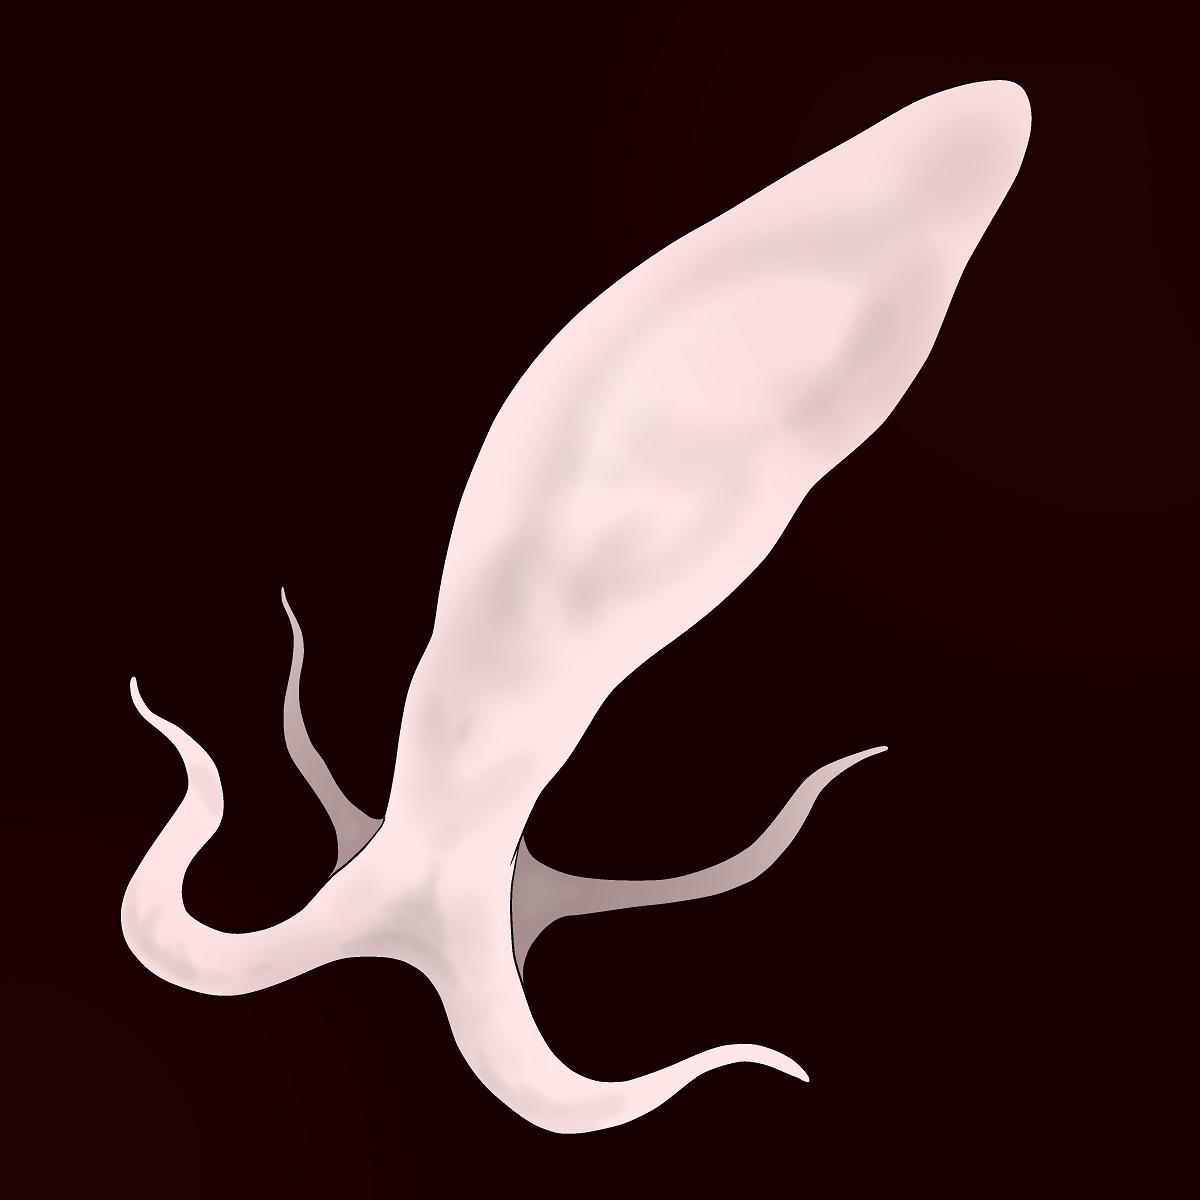 Sperm Creature on Male 0